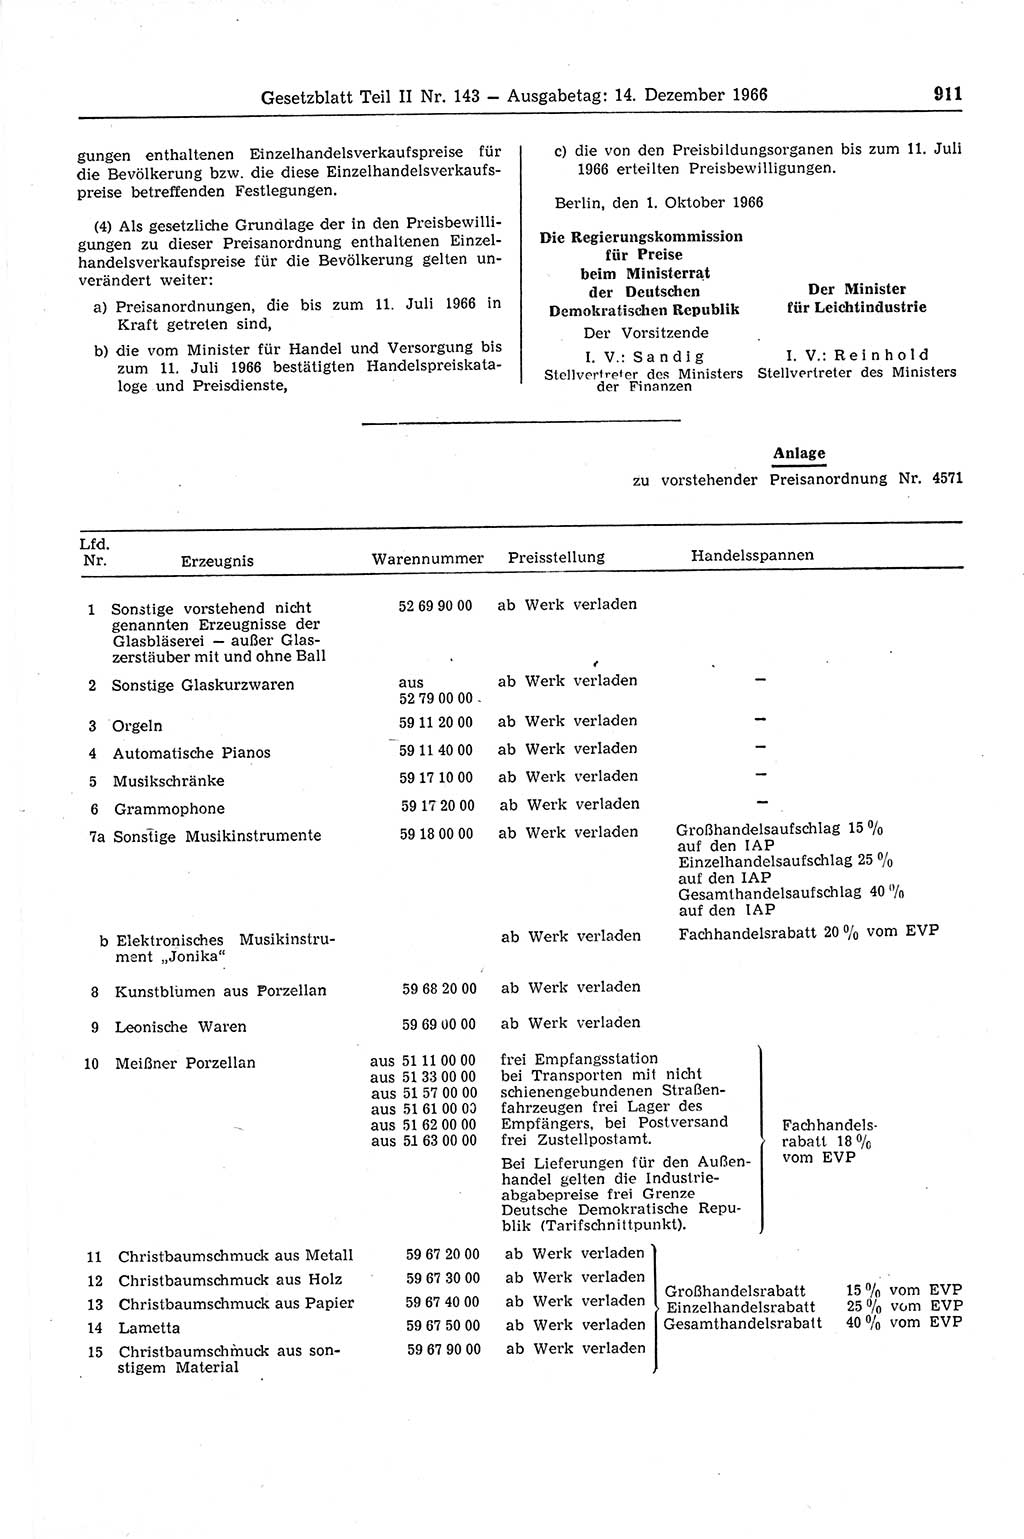 Gesetzblatt (GBl.) der Deutschen Demokratischen Republik (DDR) Teil ⅠⅠ 1966, Seite 911 (GBl. DDR ⅠⅠ 1966, S. 911)